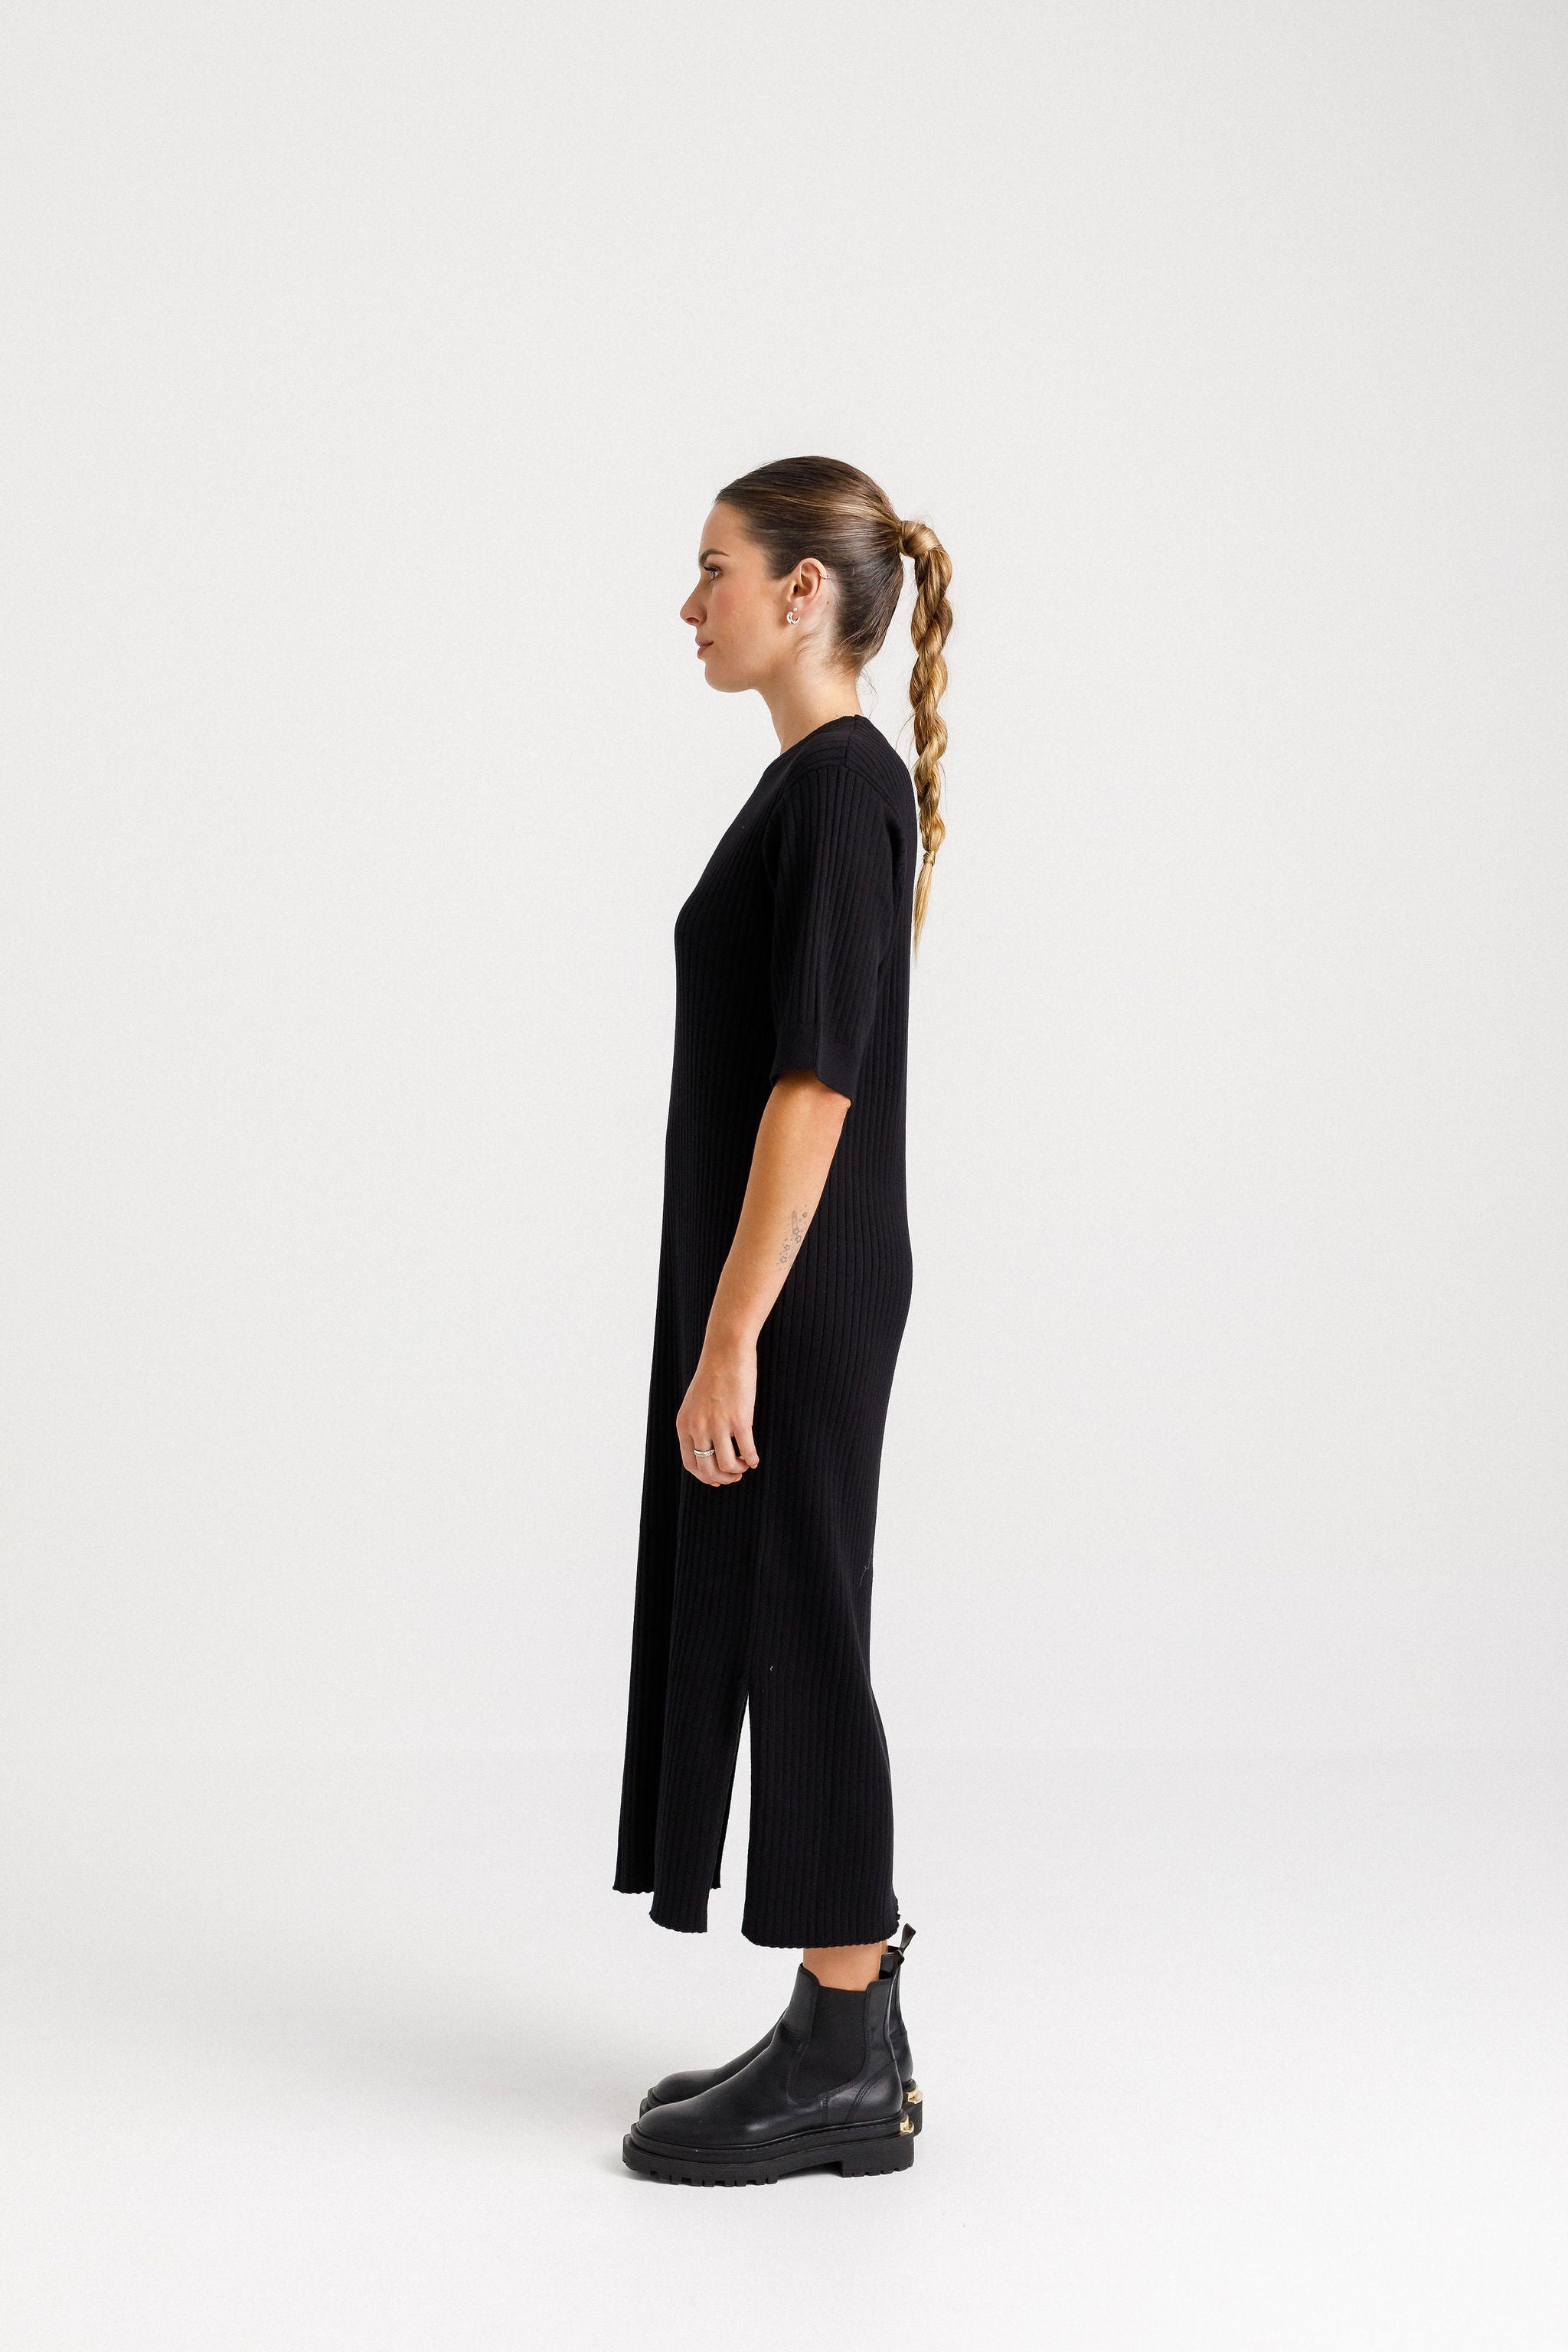 Sienna Knit Dress - Black